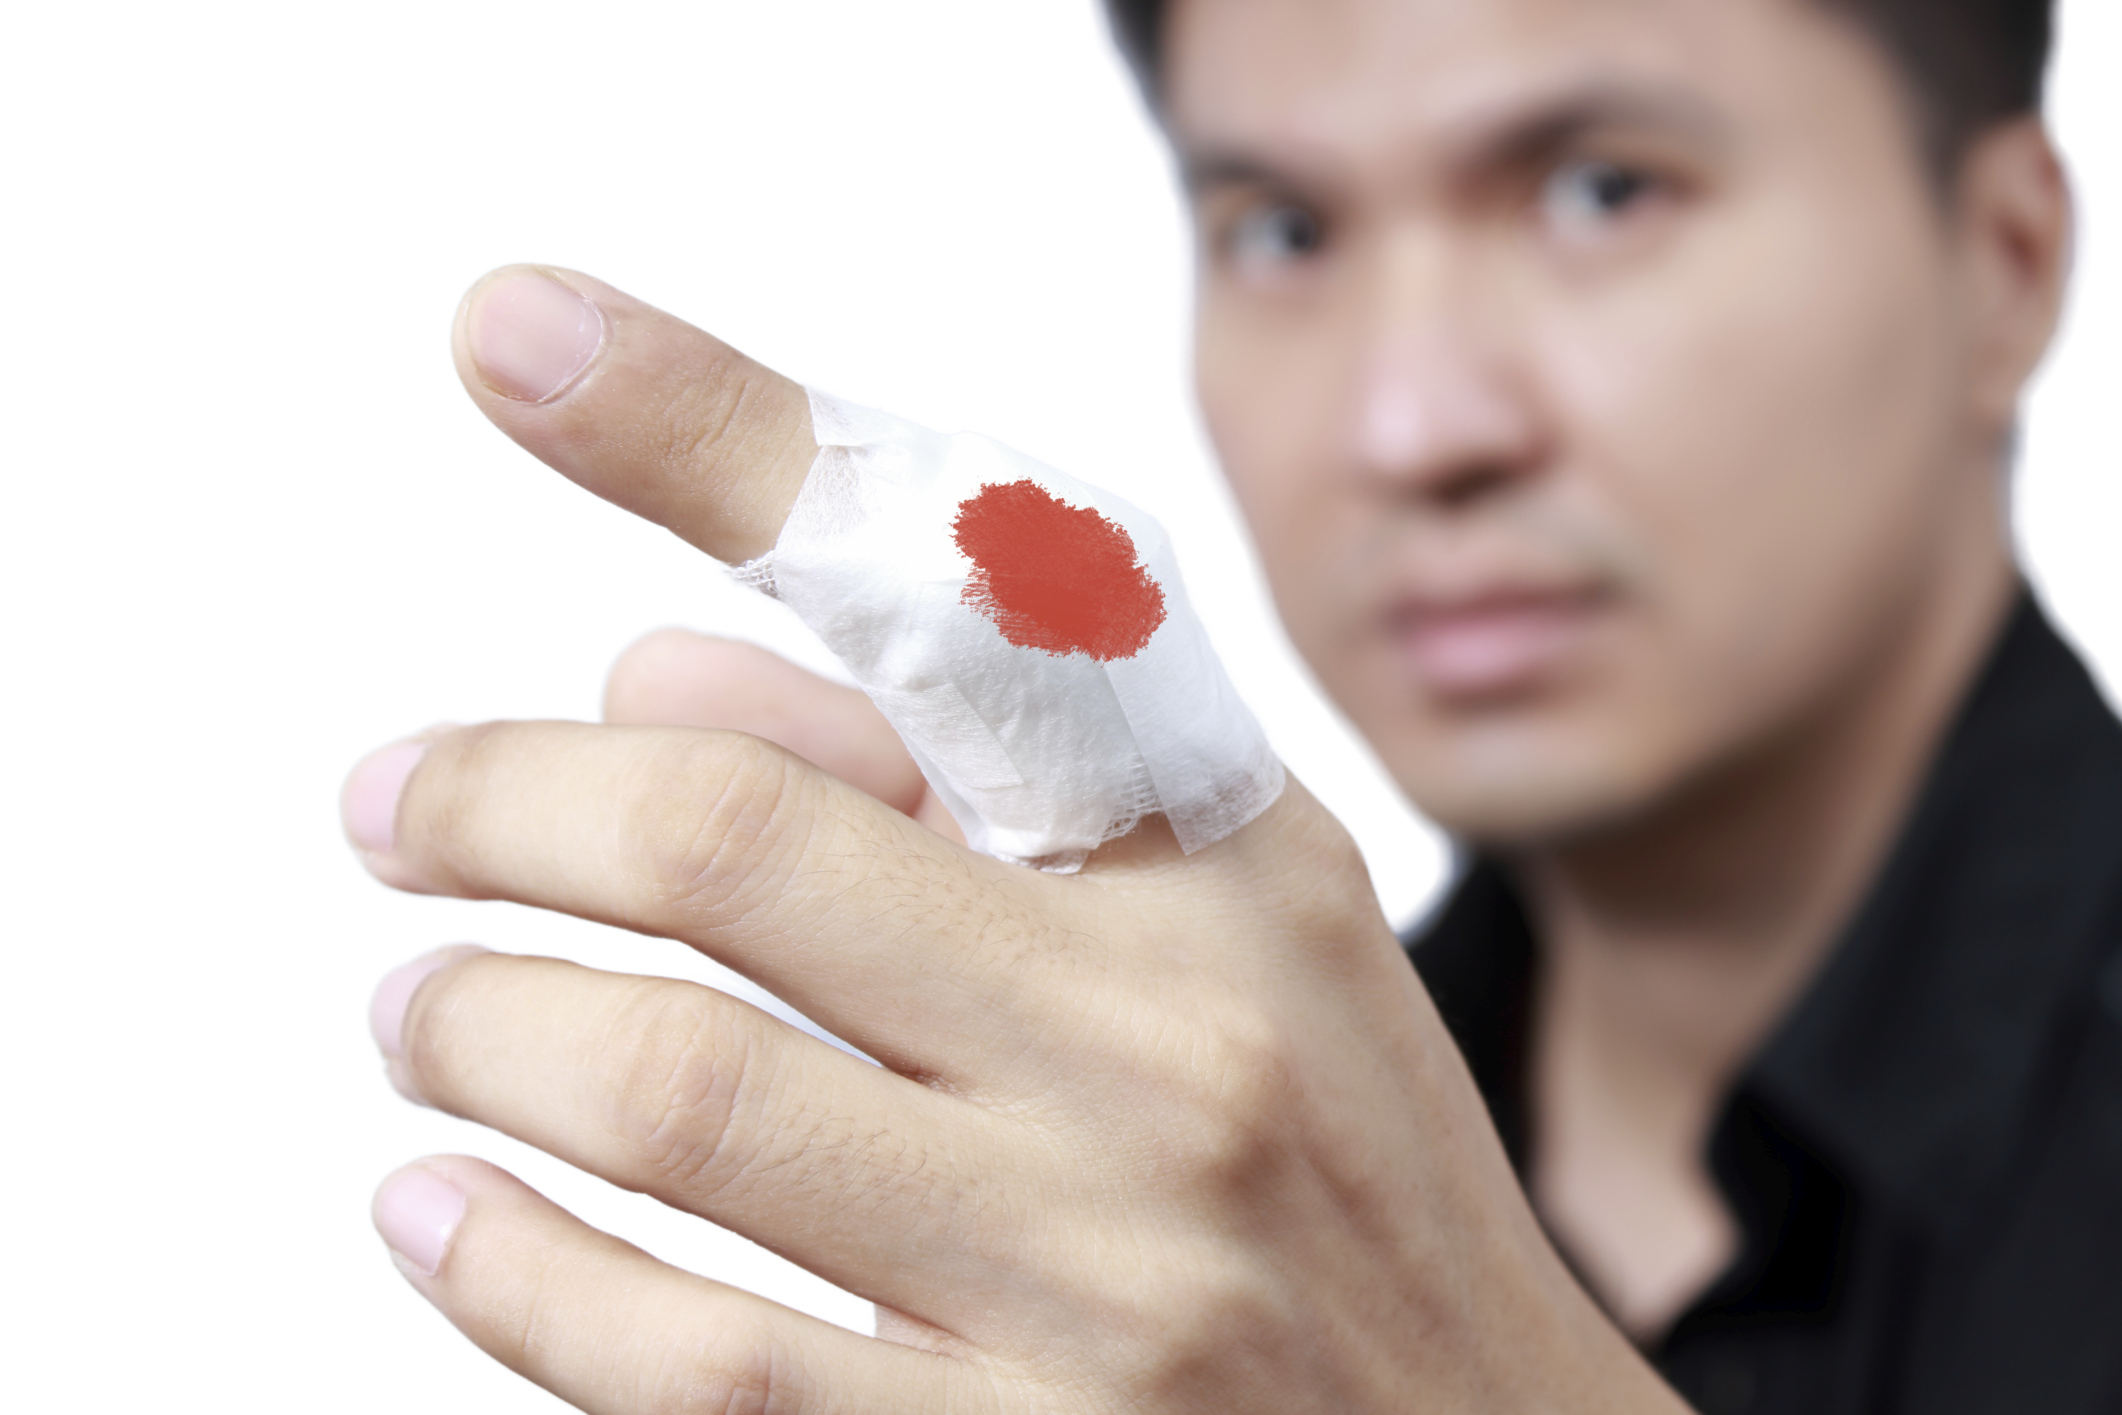 Injured painful finger with white gauze bandage, isolated